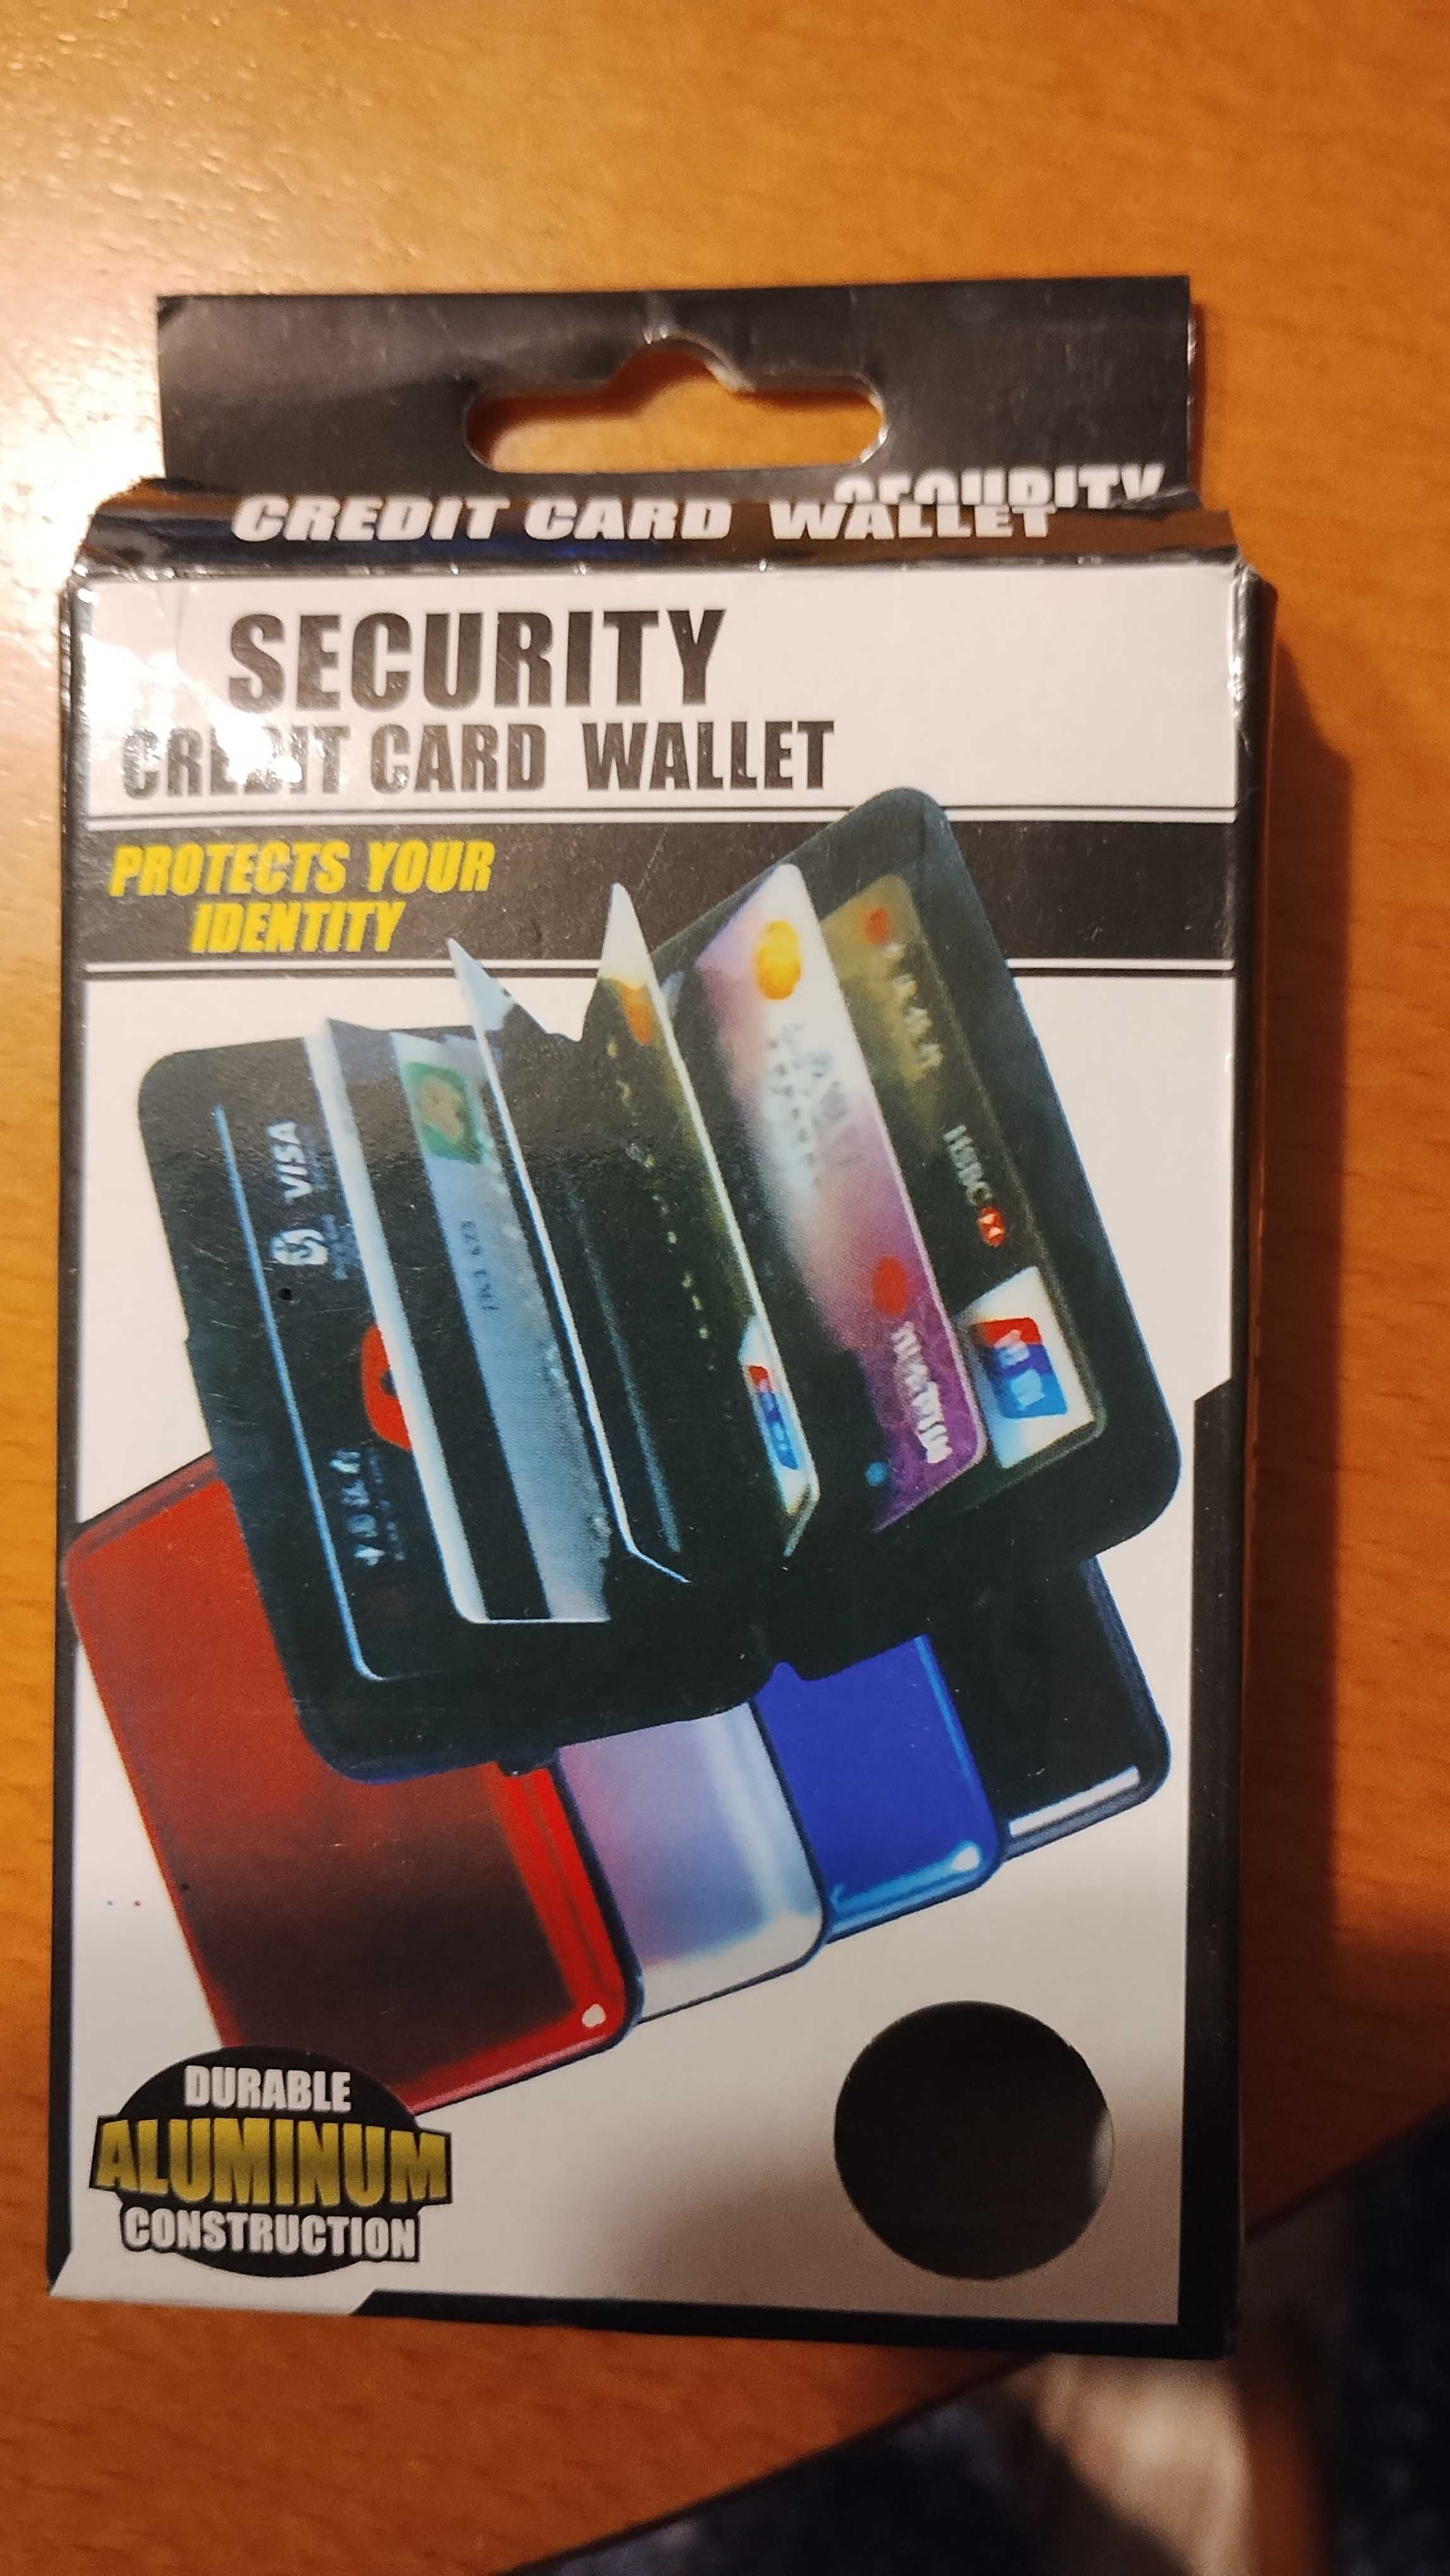 •	Portfel na karty kredytowe - blokuje skanowanie RFID